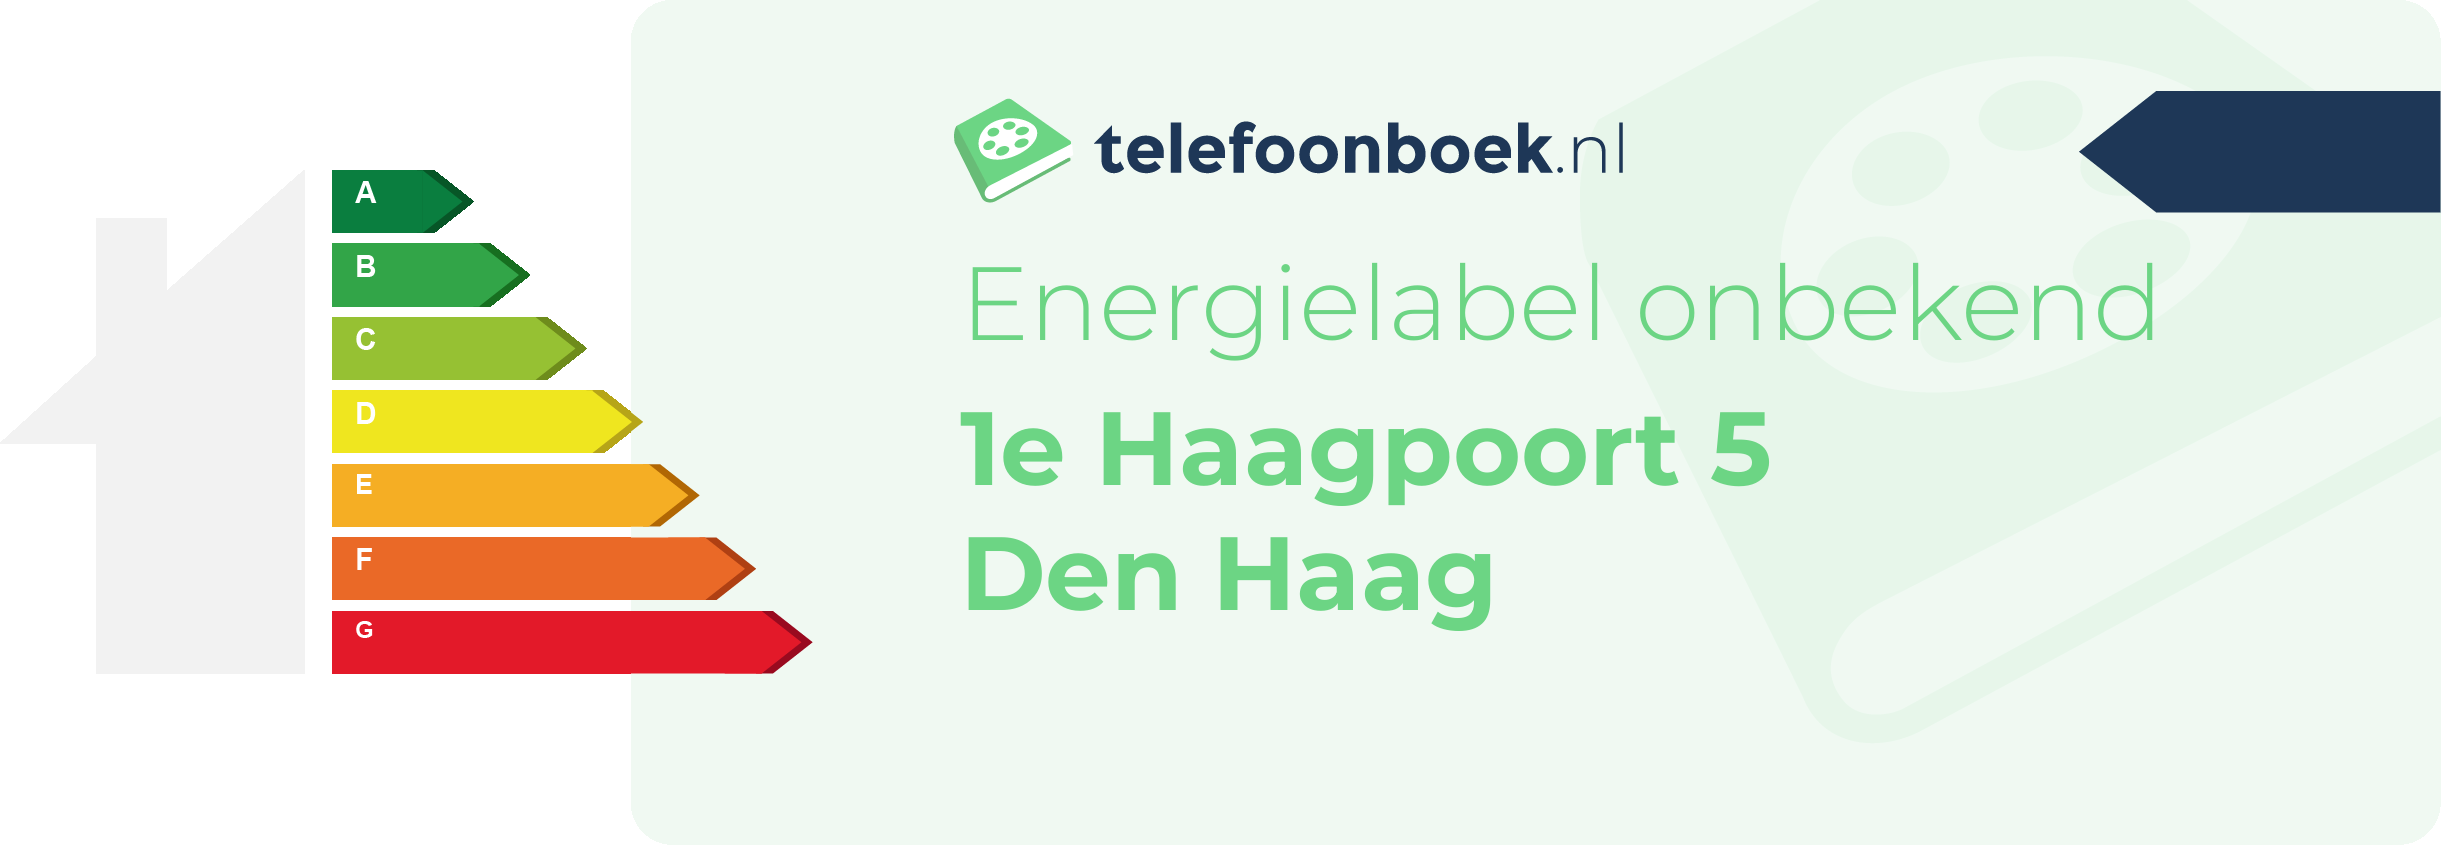 Energielabel 1e Haagpoort 5 Den Haag